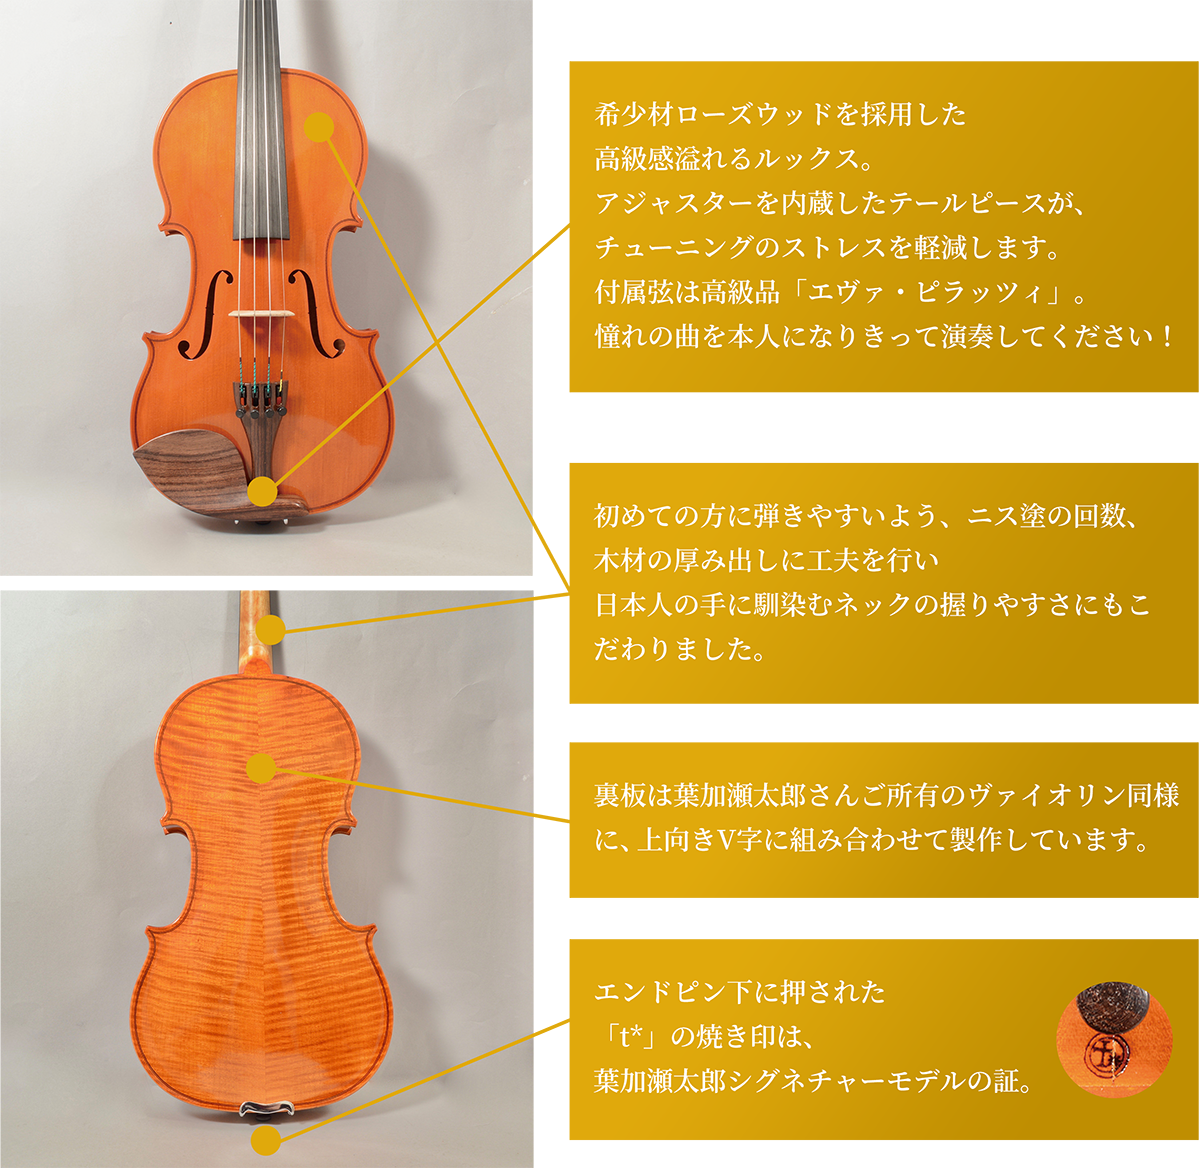 葉加瀬オリジナルバイオリン - 葉加瀬アカデミー